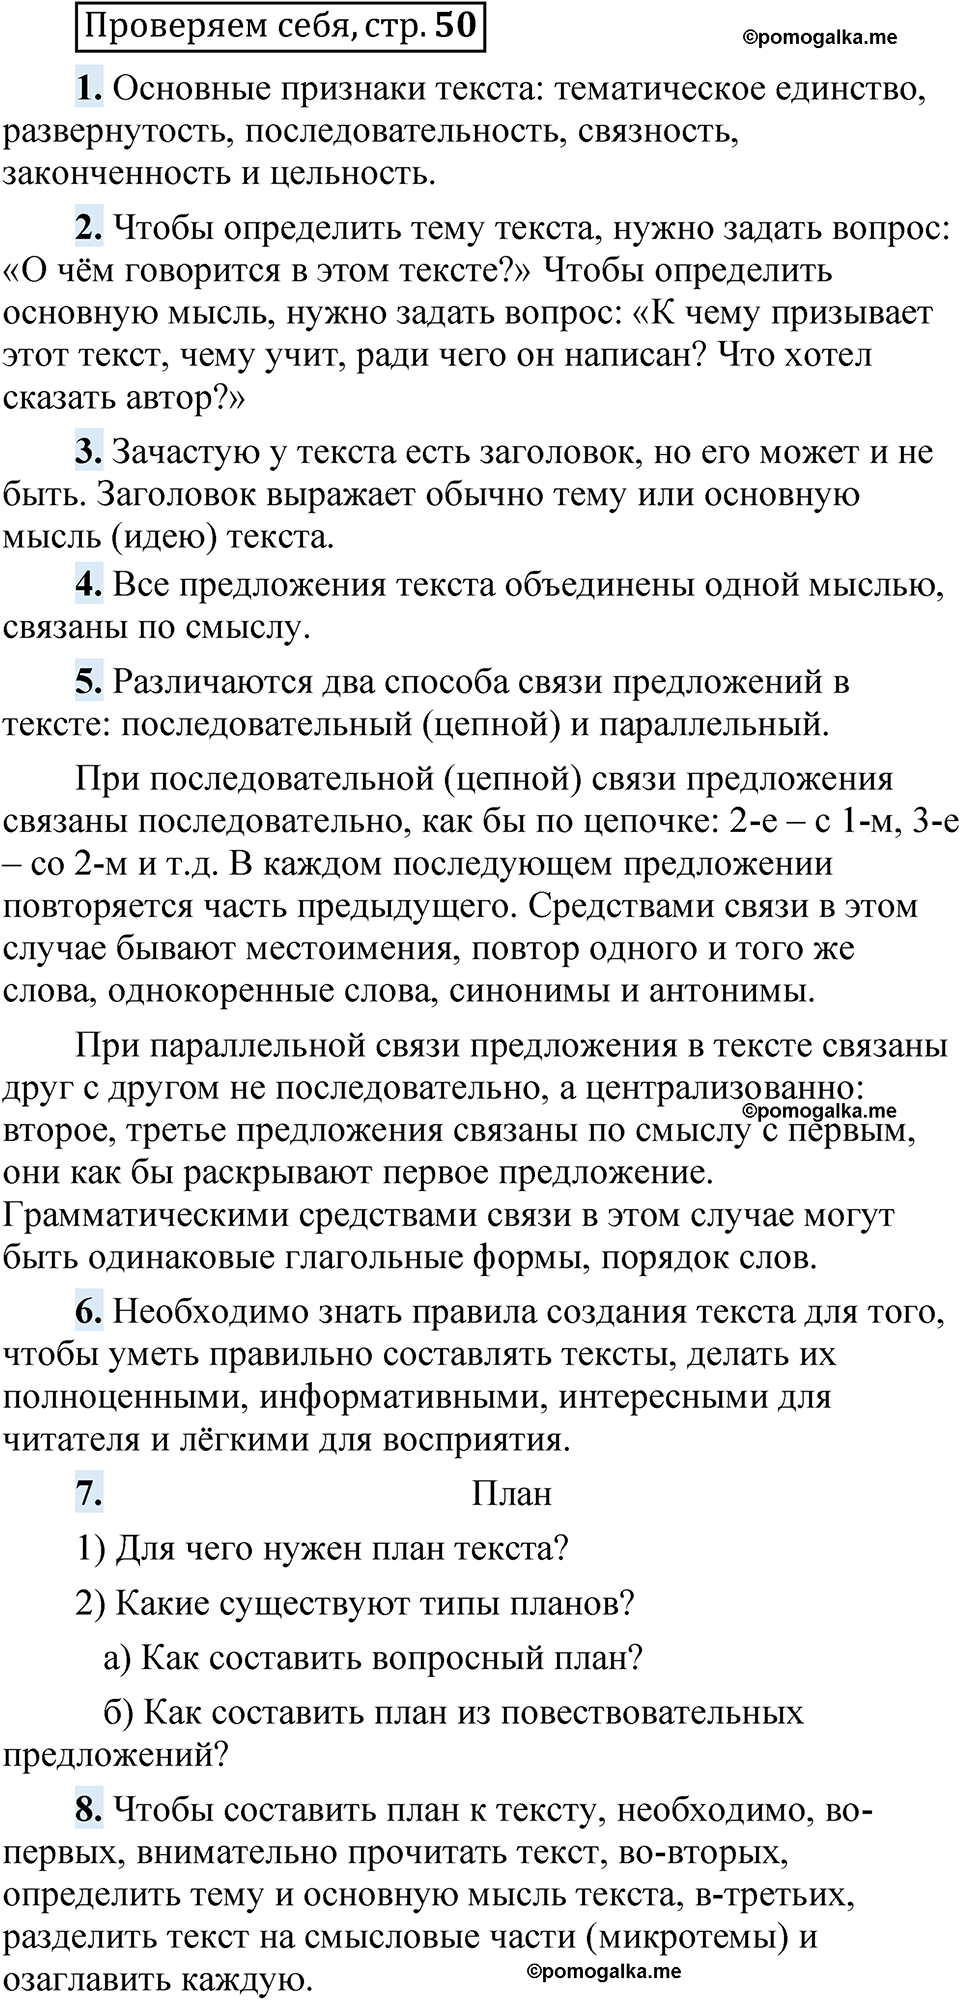 страница 50 Проверяем себя русский язык 5 класс Быстрова, Кибирева 1 часть 2021 год